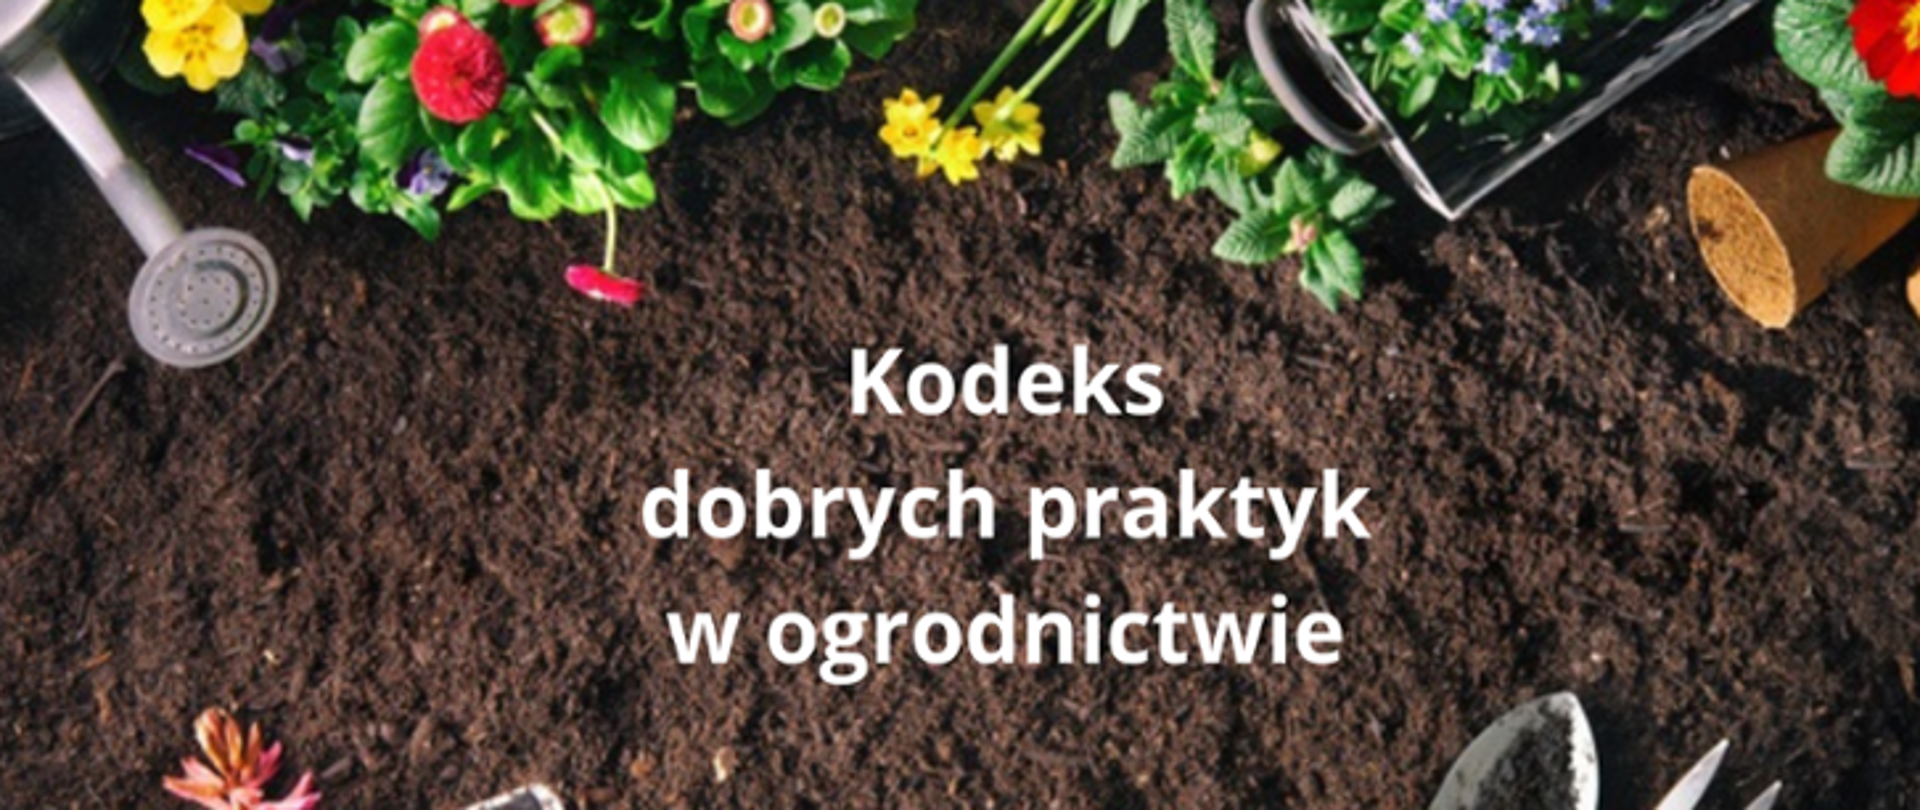 Kodeks dobrych praktyk w ogrodnictwie - napis na glebie, obok kolorowe kwiaty i konewka